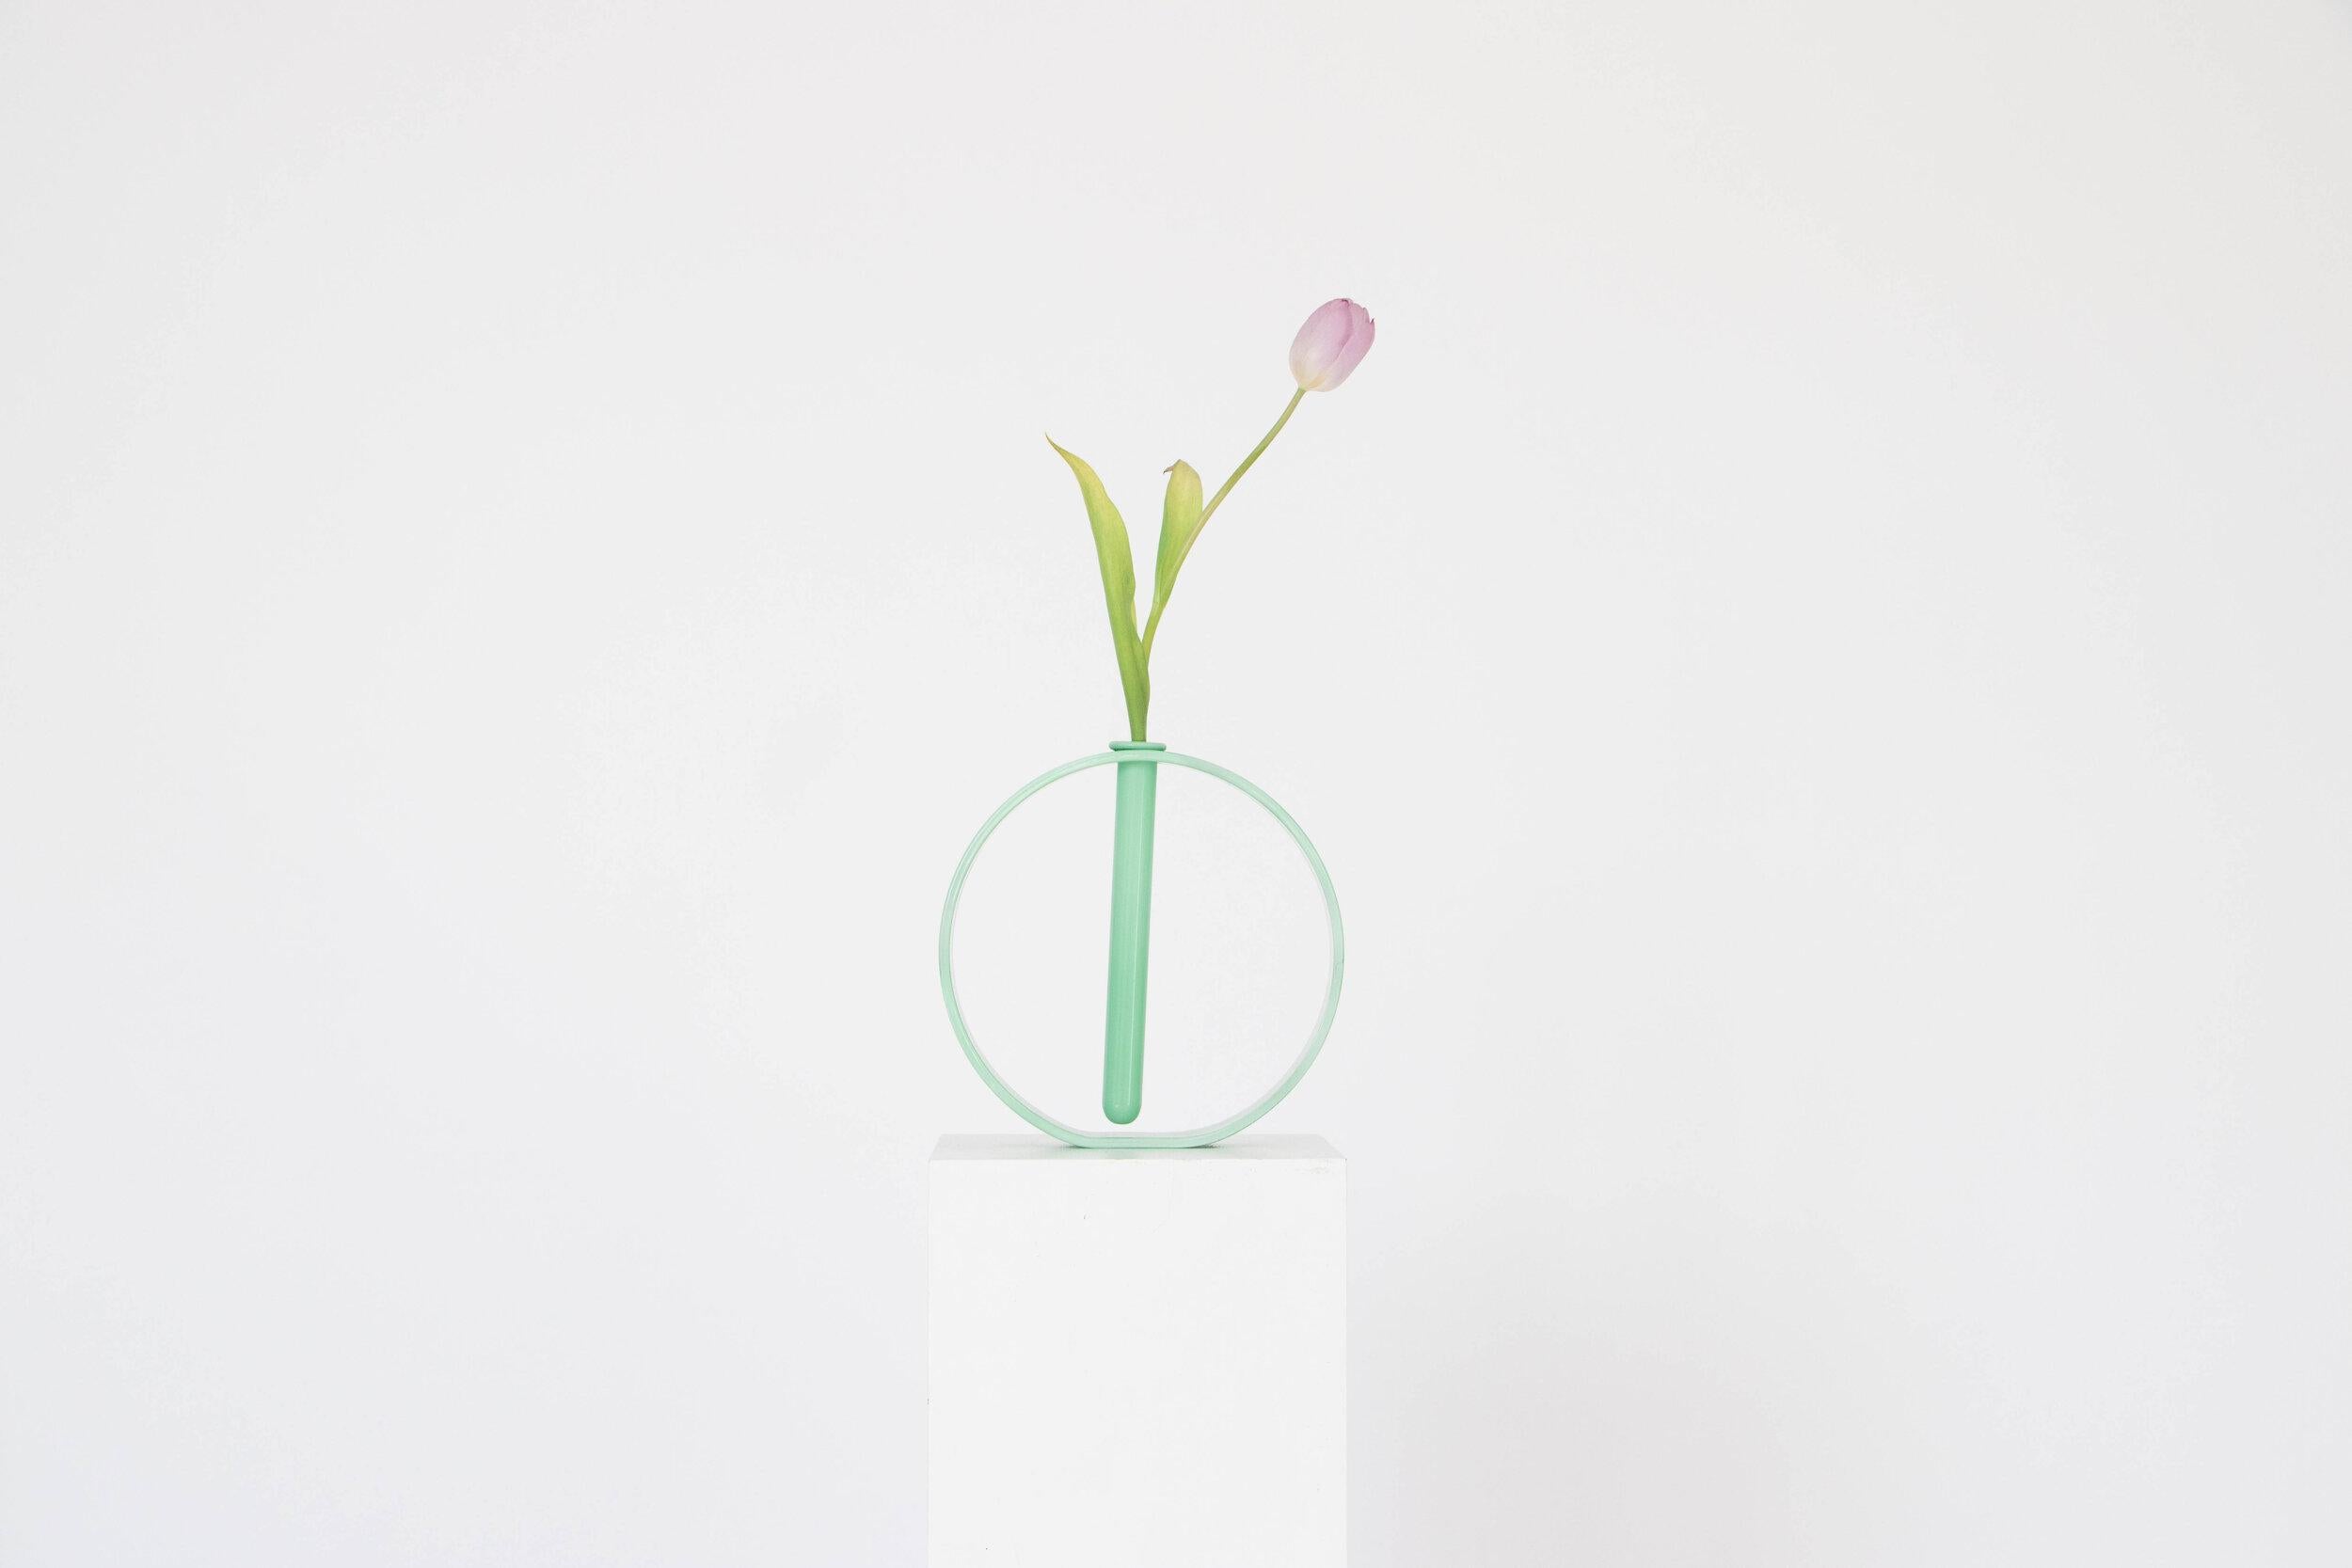 Ein Satz von 6 undurchsichtigen, mintfarbenen Gaia-Vasen von Valeria Vasi
Limitierte Auflage
Handgefertigt in Barcelona, 2021
MATERIALIEN: Glas
Abmessungen: 20 x 4 cm
Auch erhältlich in: opak rosa, opak mint, opak lila. 

Eine skulpturale Vase, die